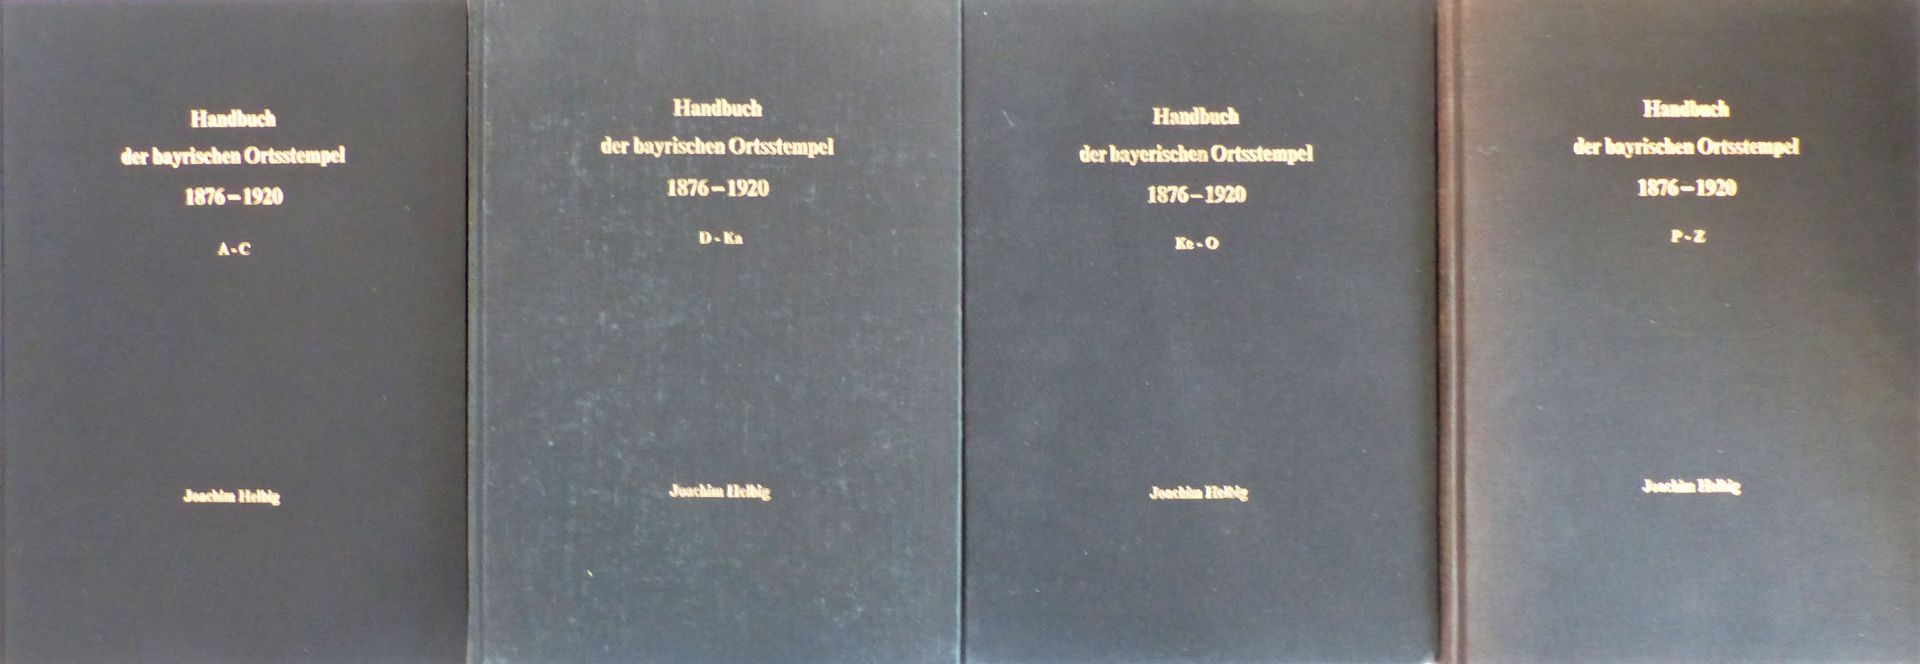 Bayern Handbuch der bayrischen Ortsstempel von Joachim Helbig, 4 Bände A-Z kpl. Gebrauchsspuren (